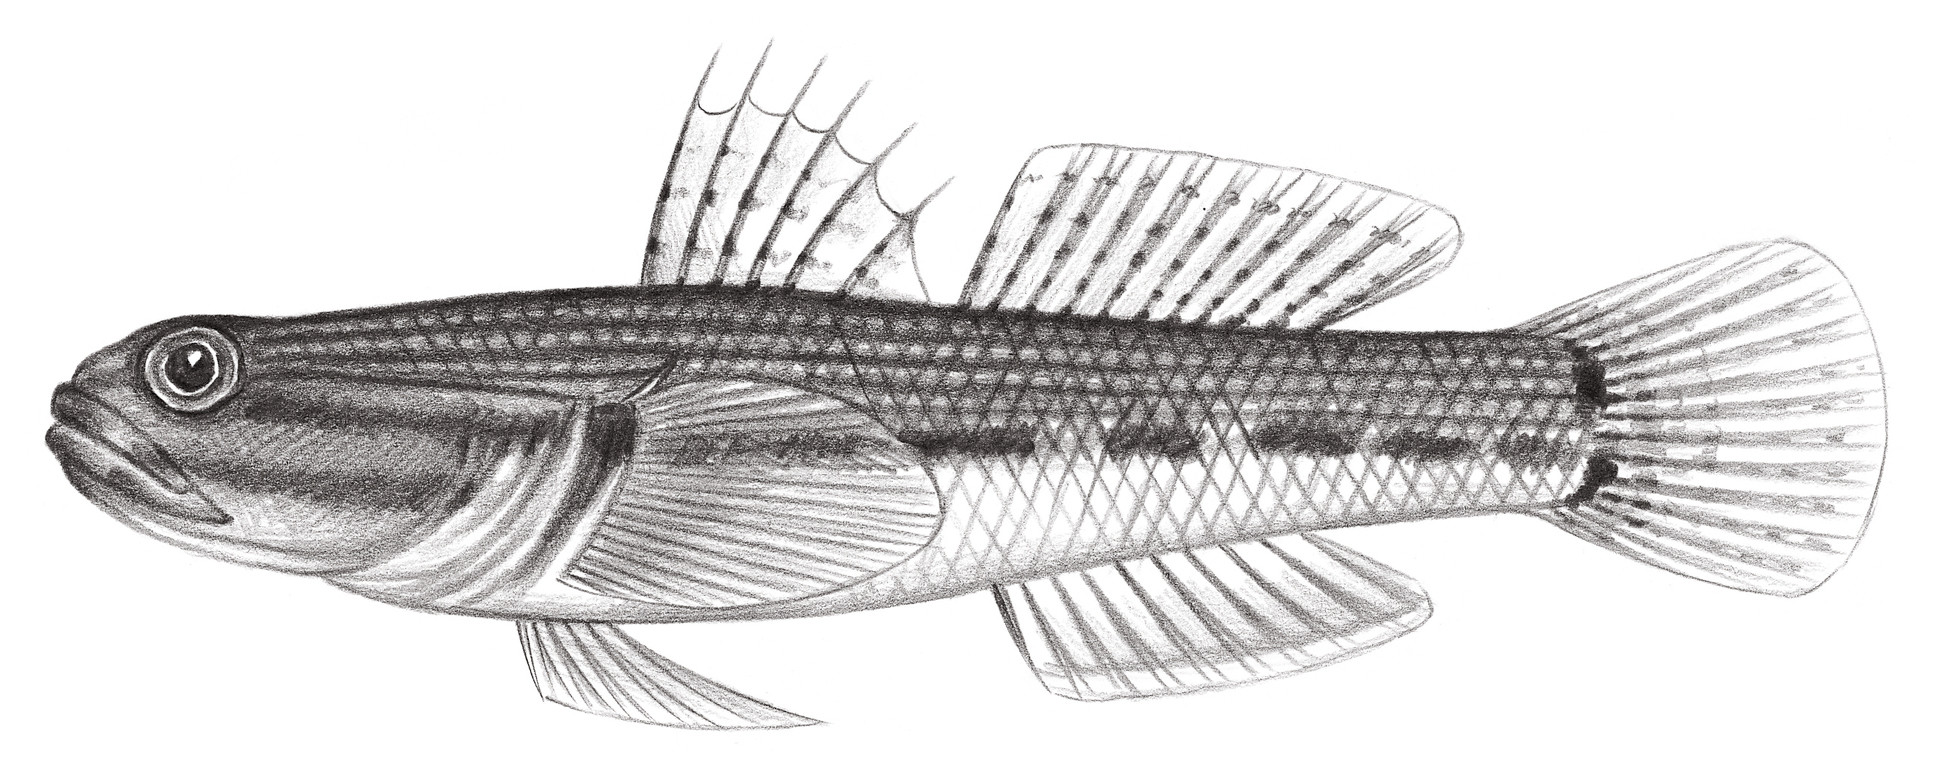 2193.	裸頸縞鰕虎 Tridentiger nudicervicus Tomiyama, 1934